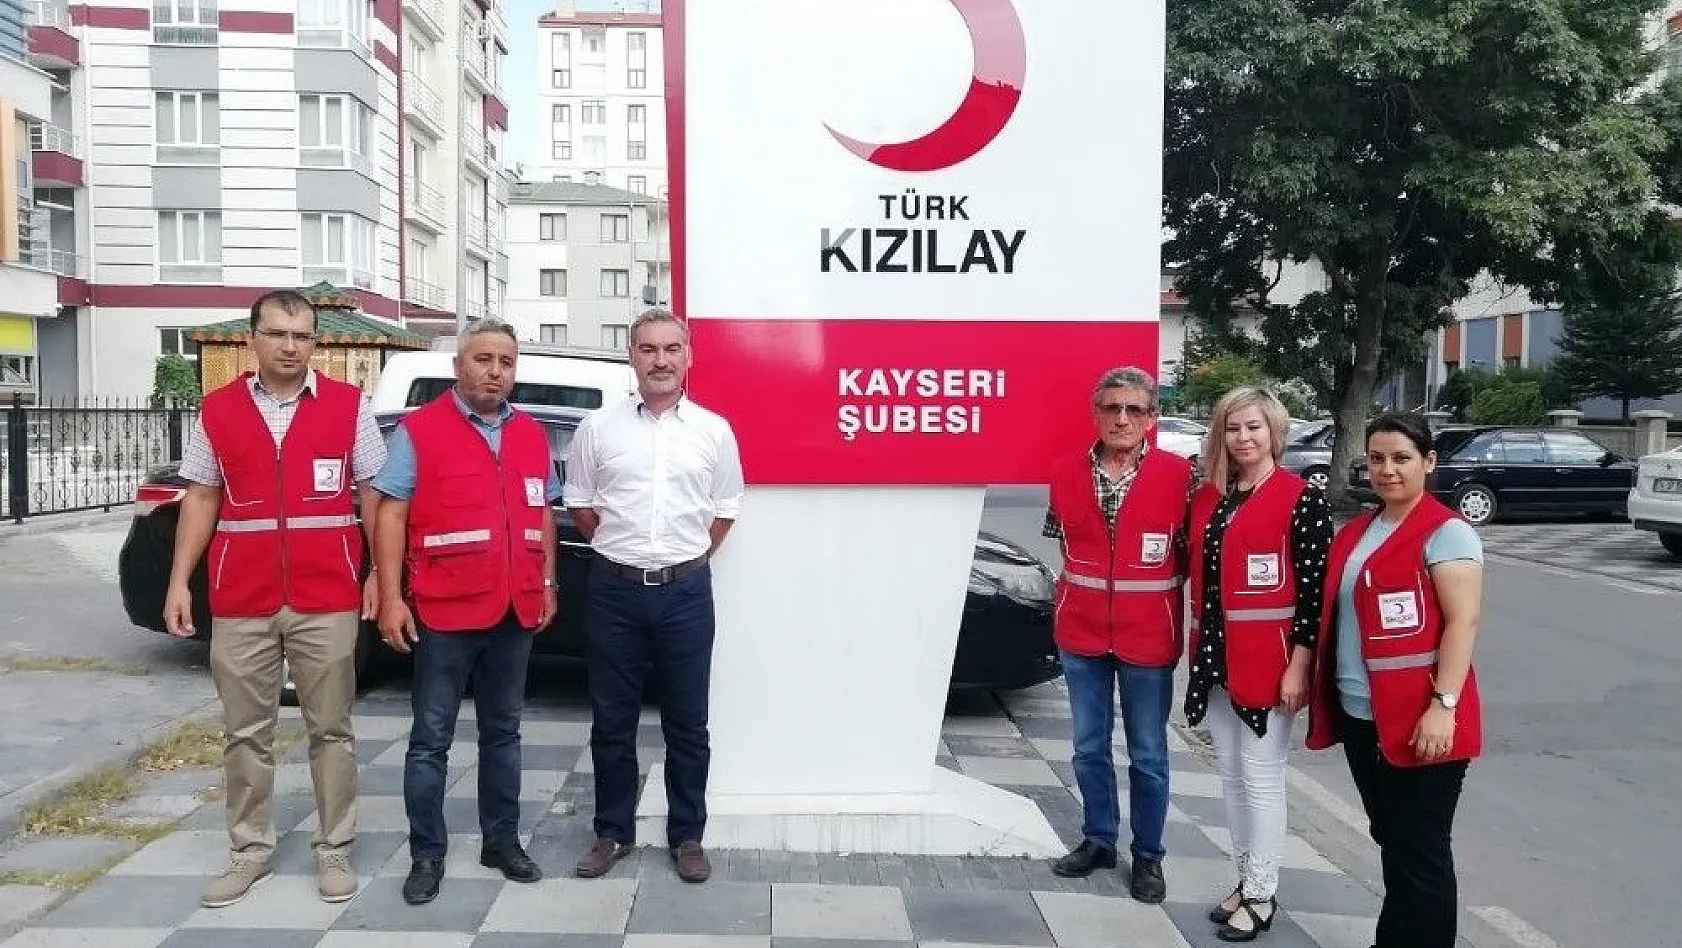 Türk Kızılay Kayseri Şubesi kurban bağışında yine 1'inci oldu
